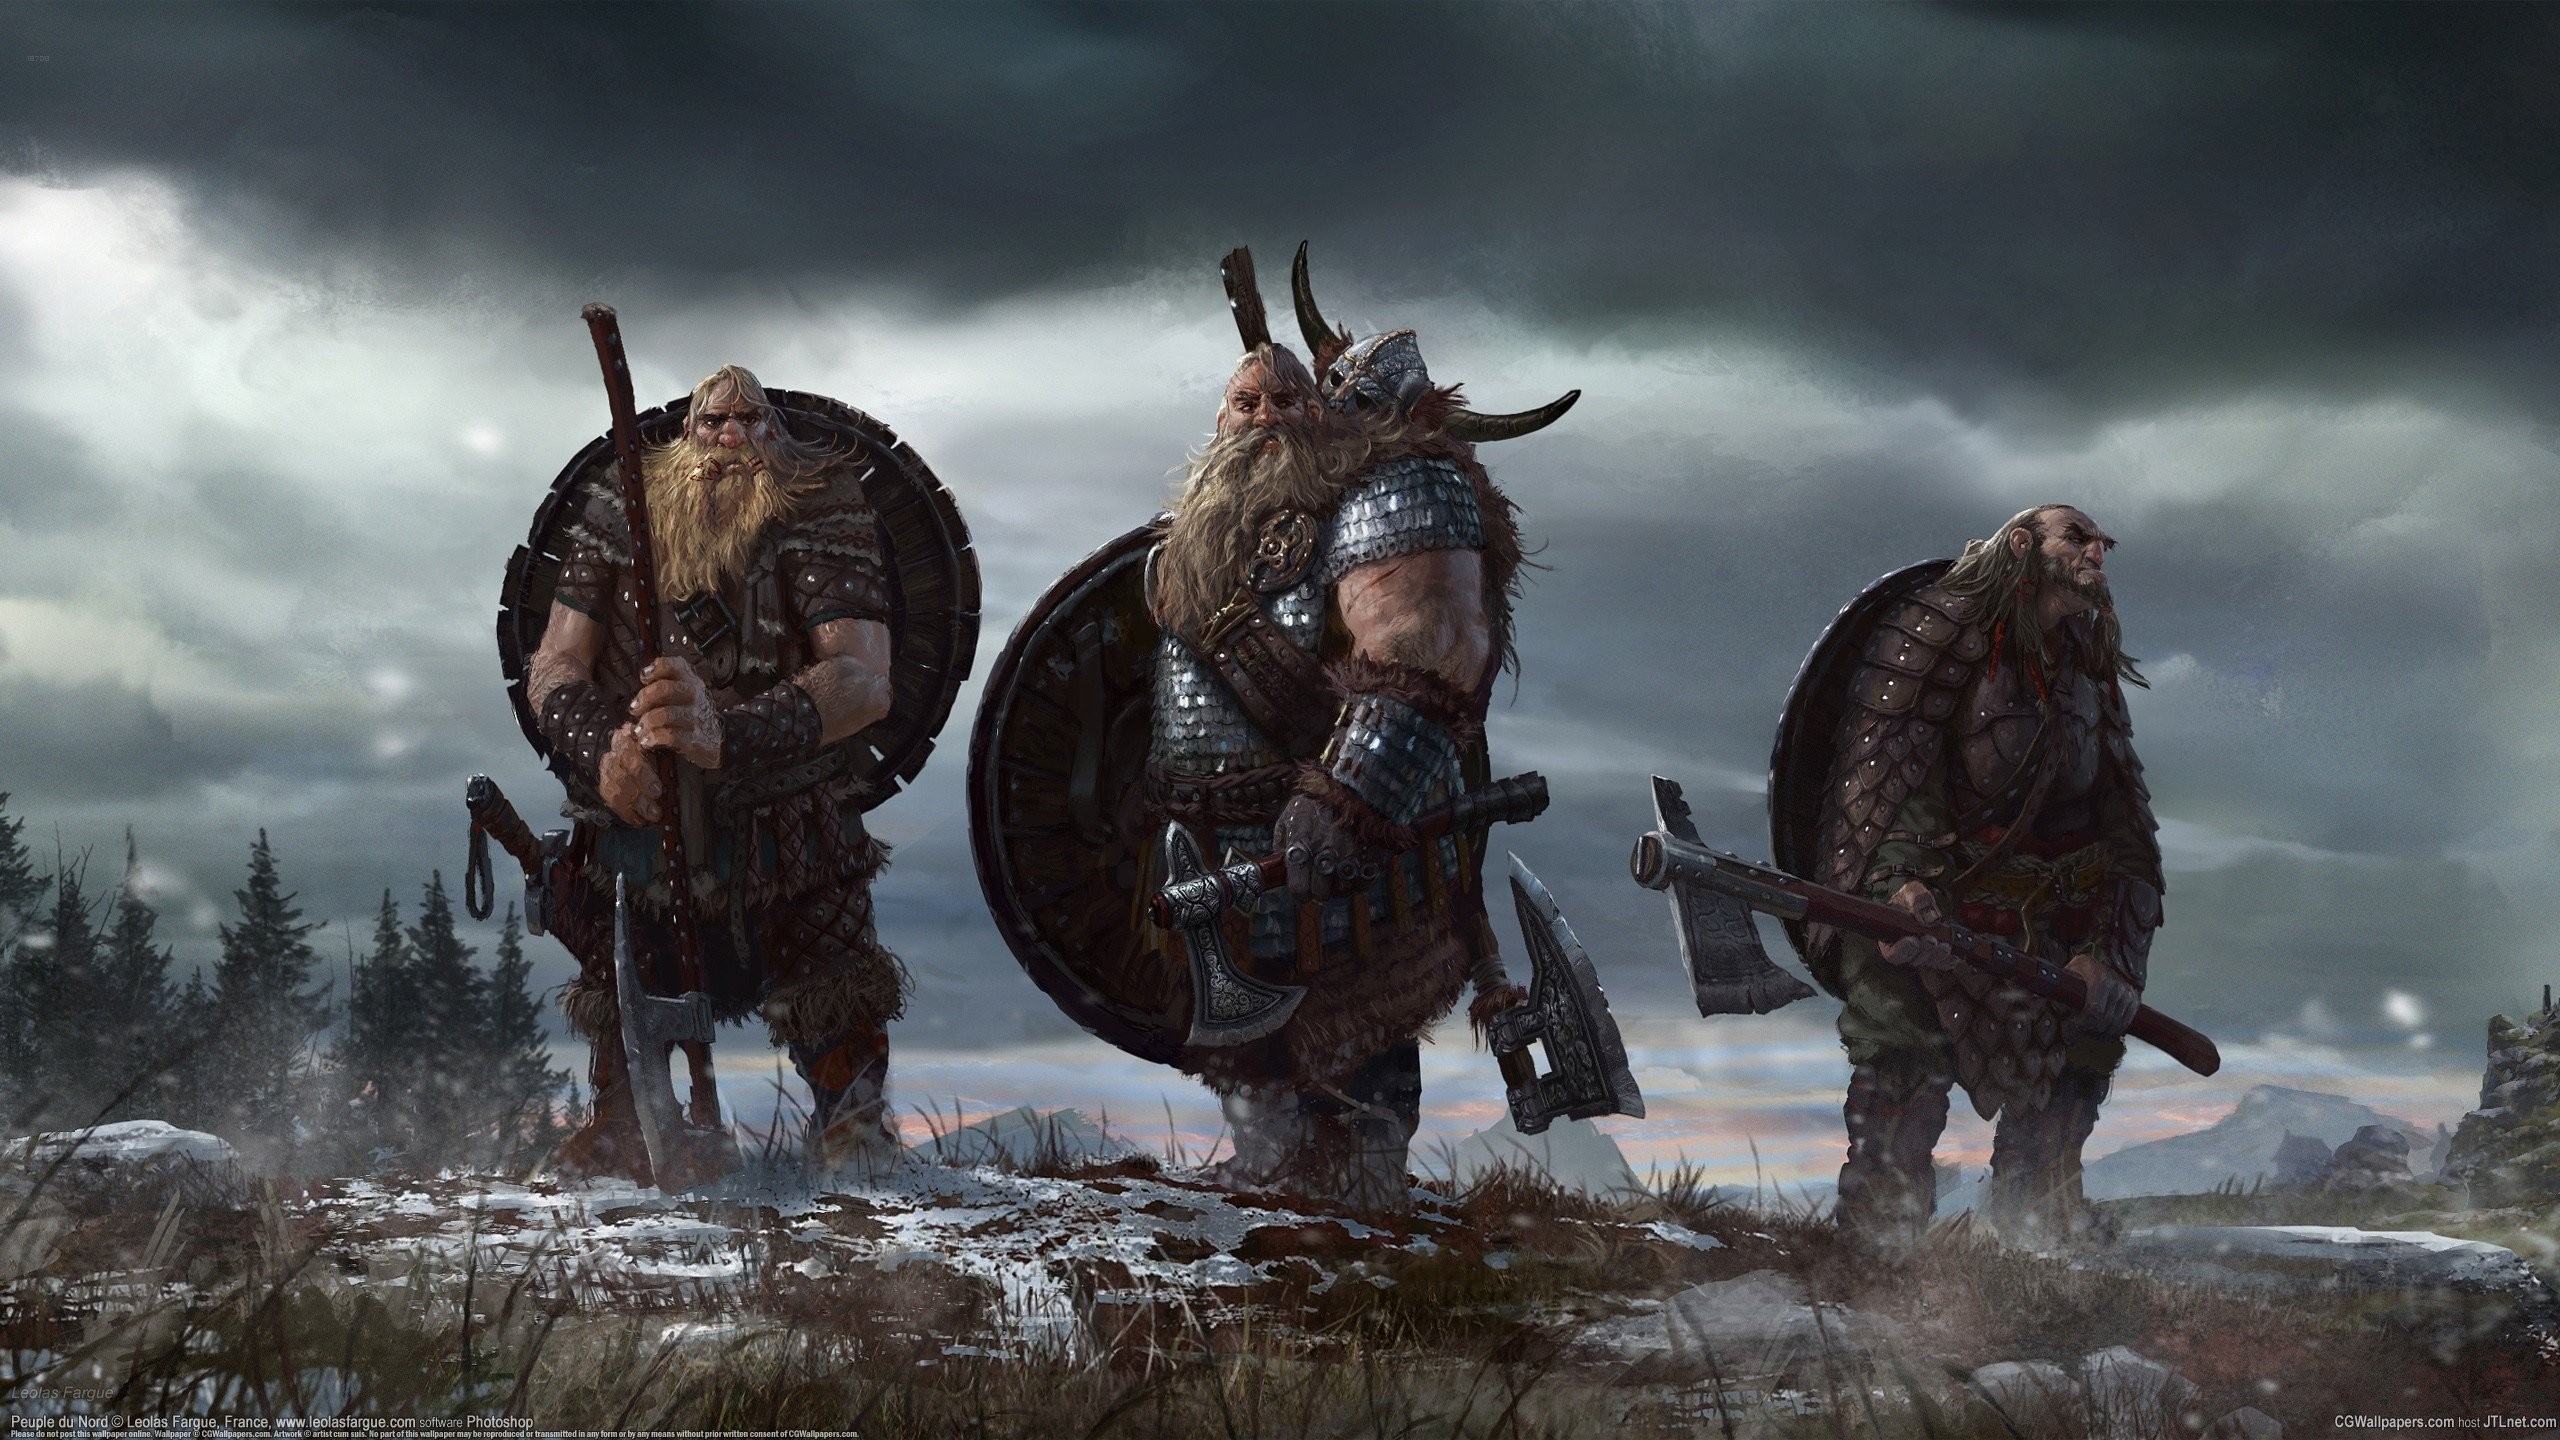 Vikings Nordic Warrior Axe Shield Artwork Concept Art Axes Fantasy Art 2560x1440